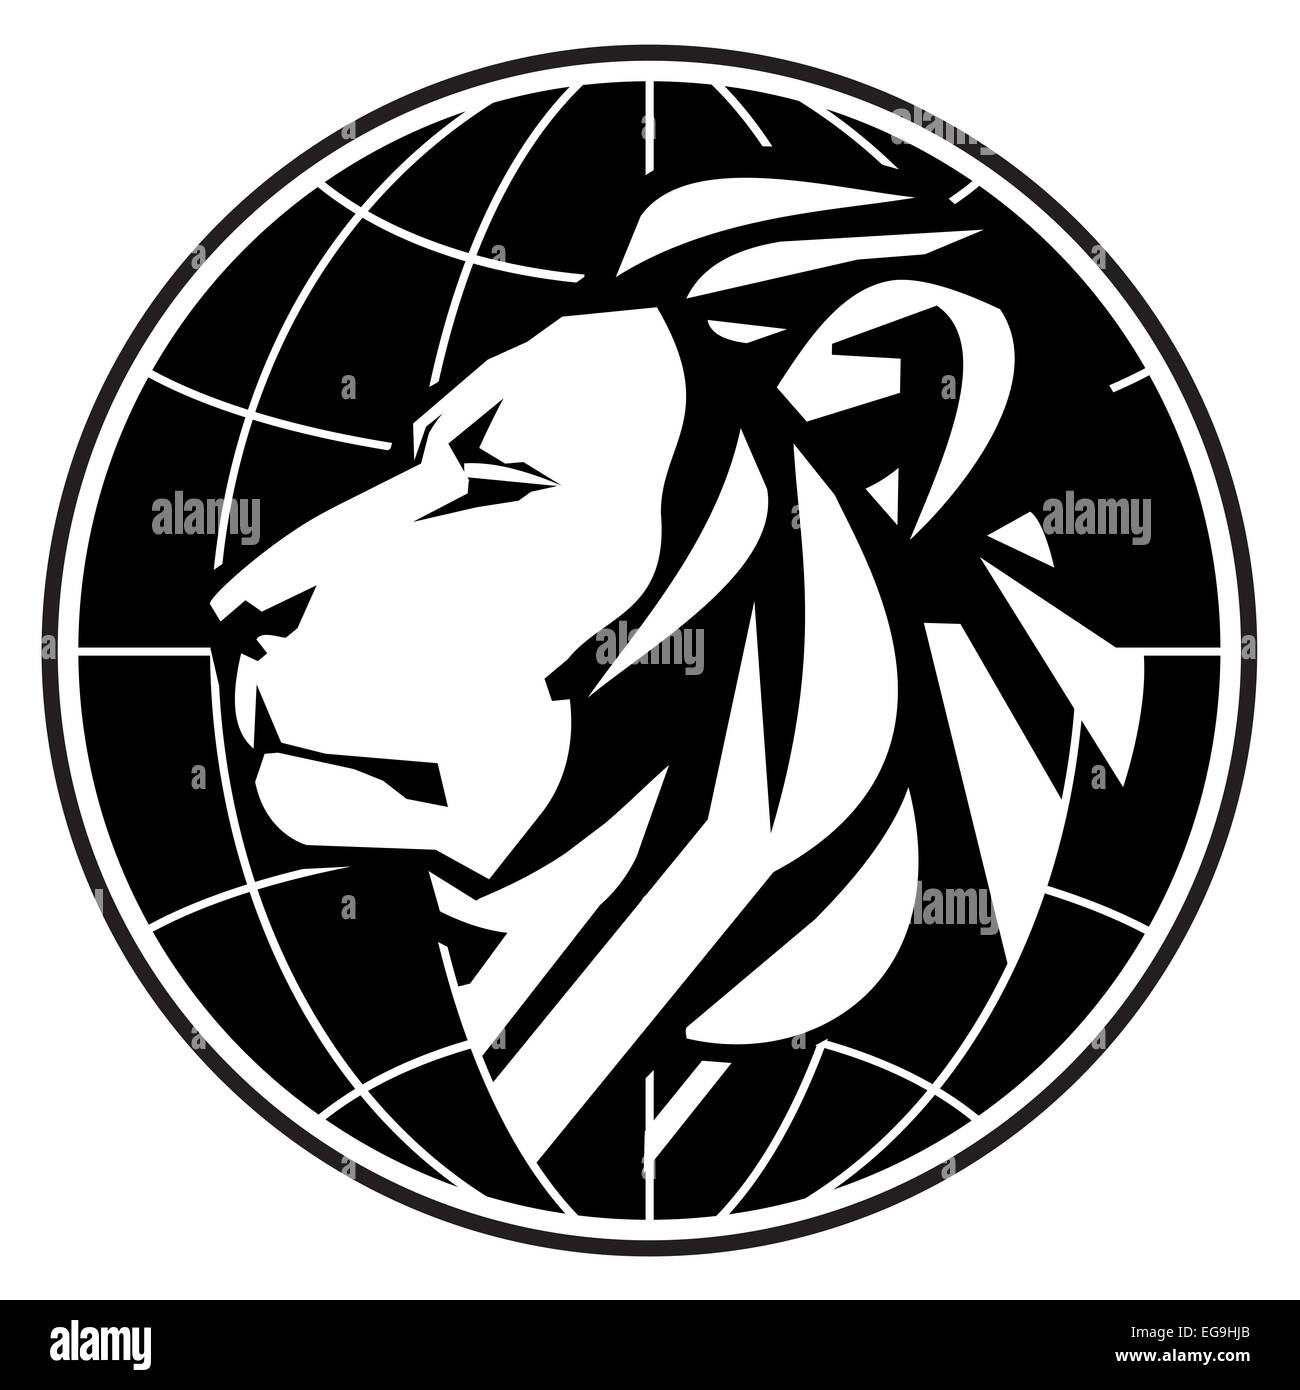 Il leone stilizzato su uno sfondo bianco. illustrazione vettoriale Foto Stock